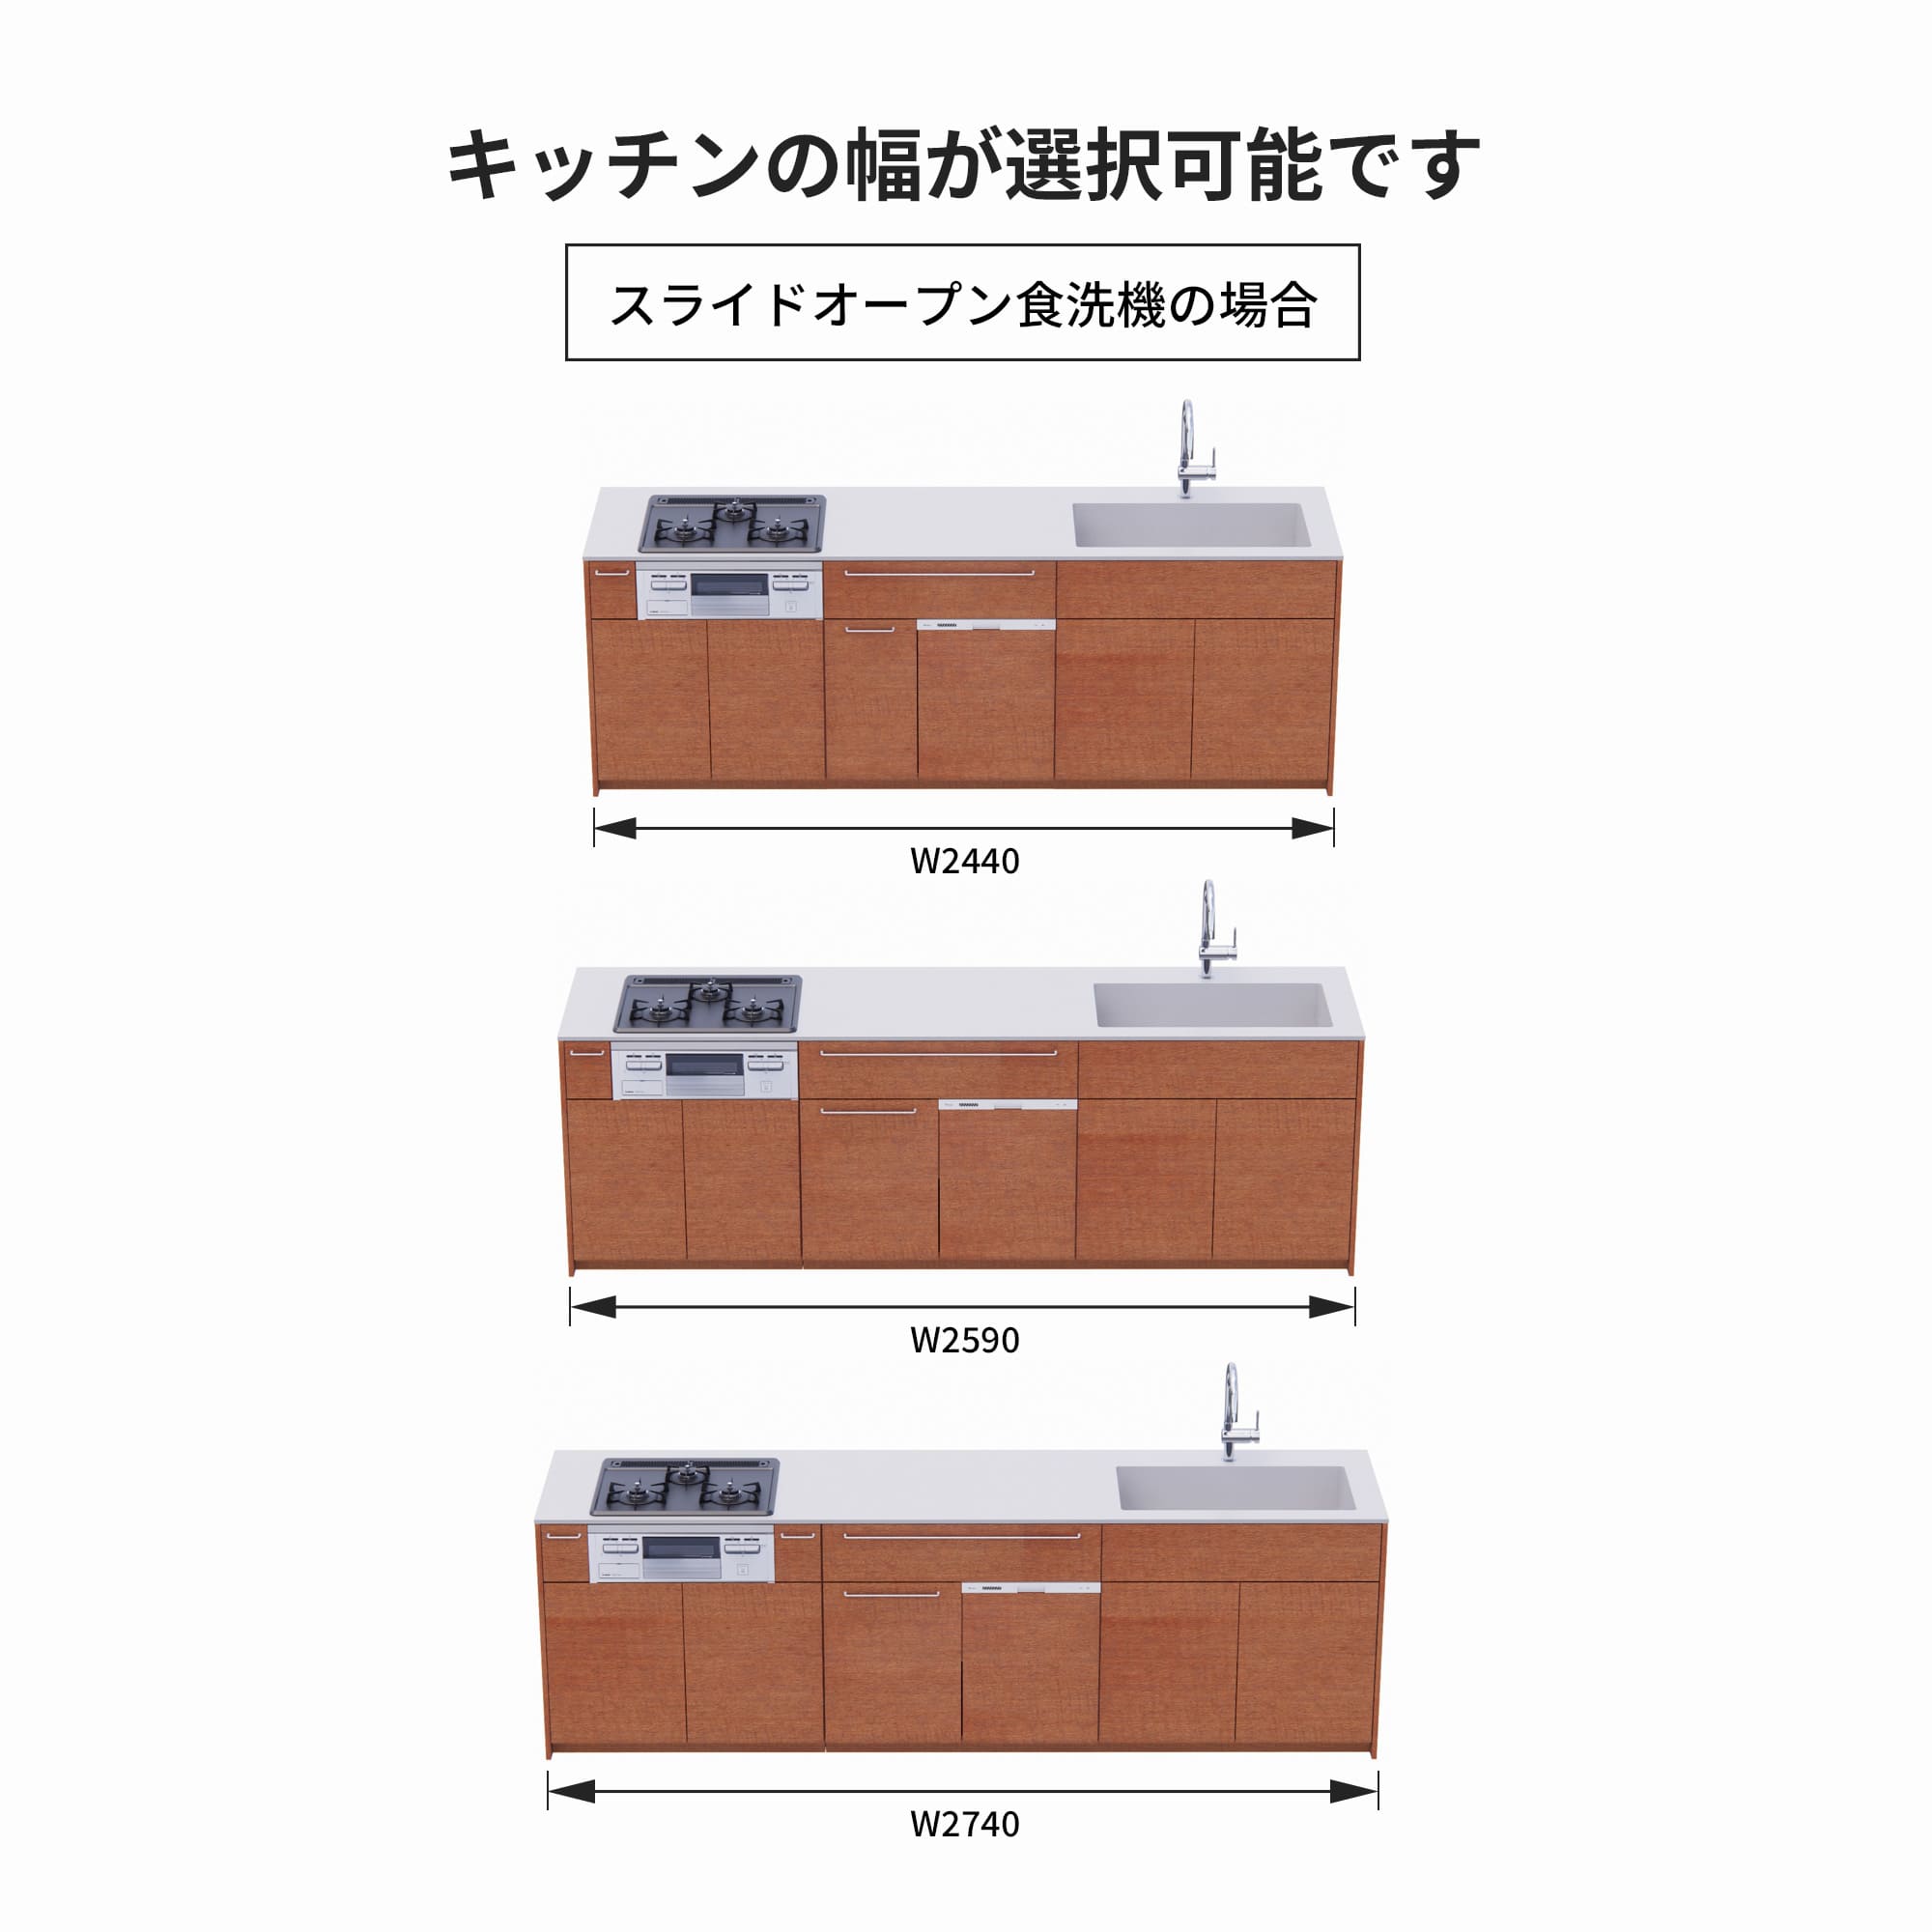 木製システムキッチン 壁付け型 W2440～2740・コンロあり / オーブンなし / 食洗機あり KB-KC022-26-G183 スライドオープンの場合